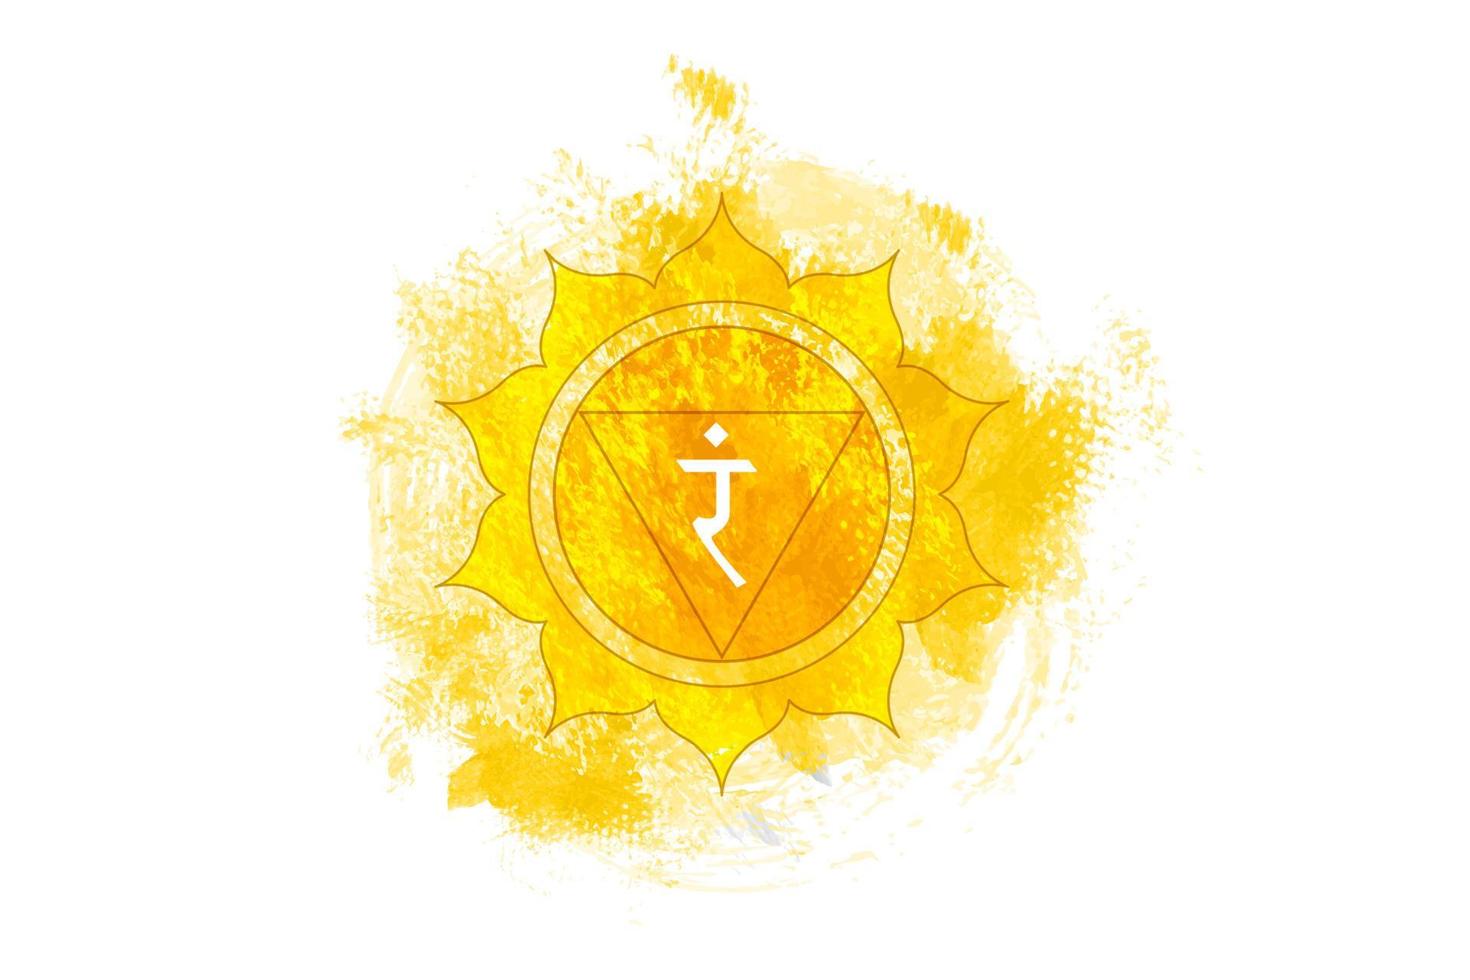 derde chakra van manipura, solar plexus chakra logo sjabloon in aquarel stijl. gele mandala. spirituele meditatie element vectorillustratie geïsoleerd op een witte achtergrond vector